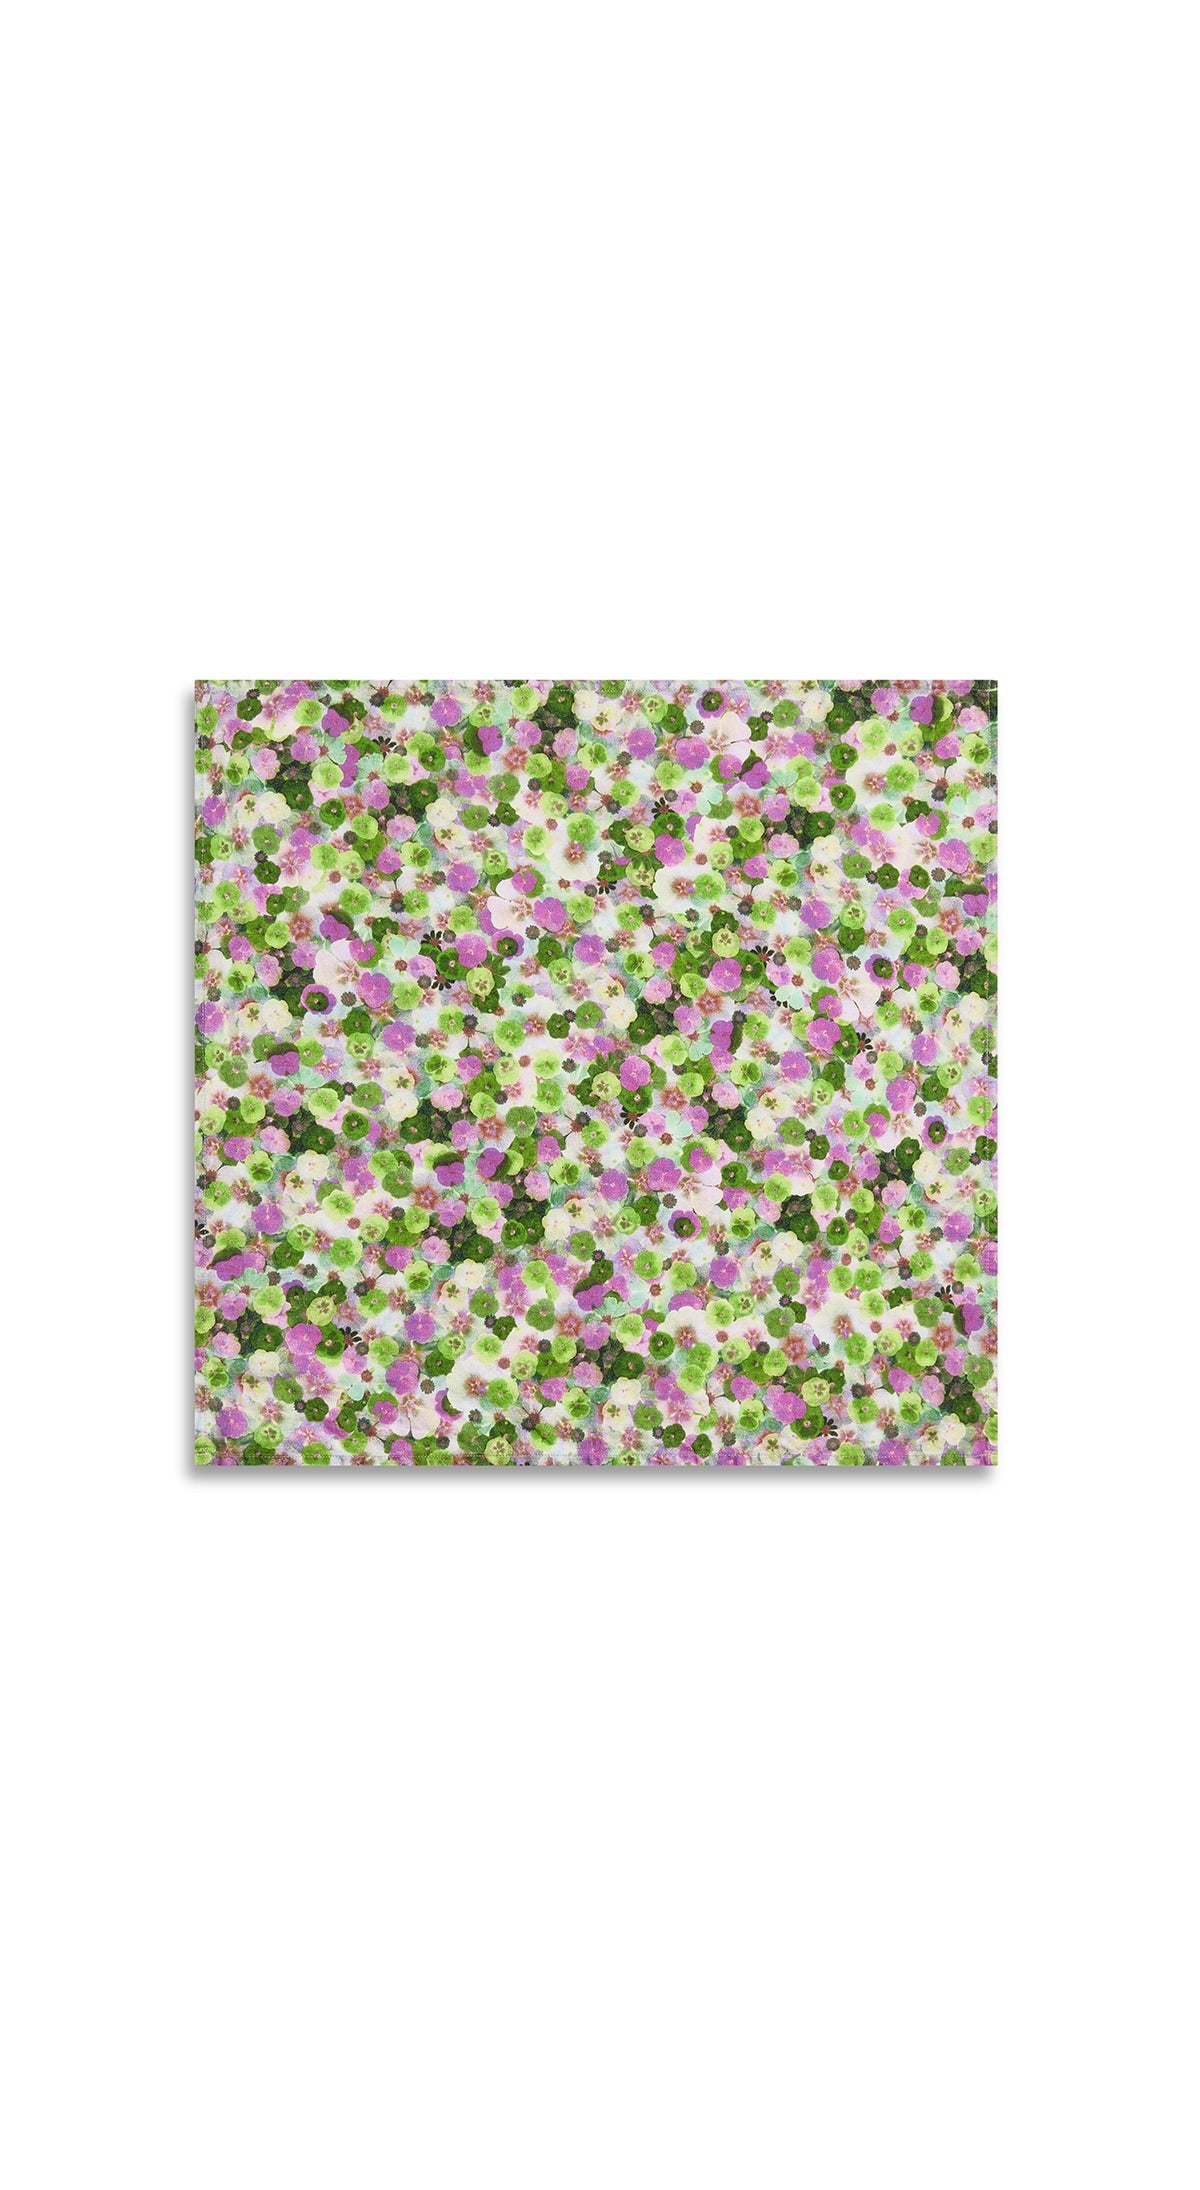 Le Marché aux Fleurs Linen Napkin in Purple, Pink and Green, 50x50cm